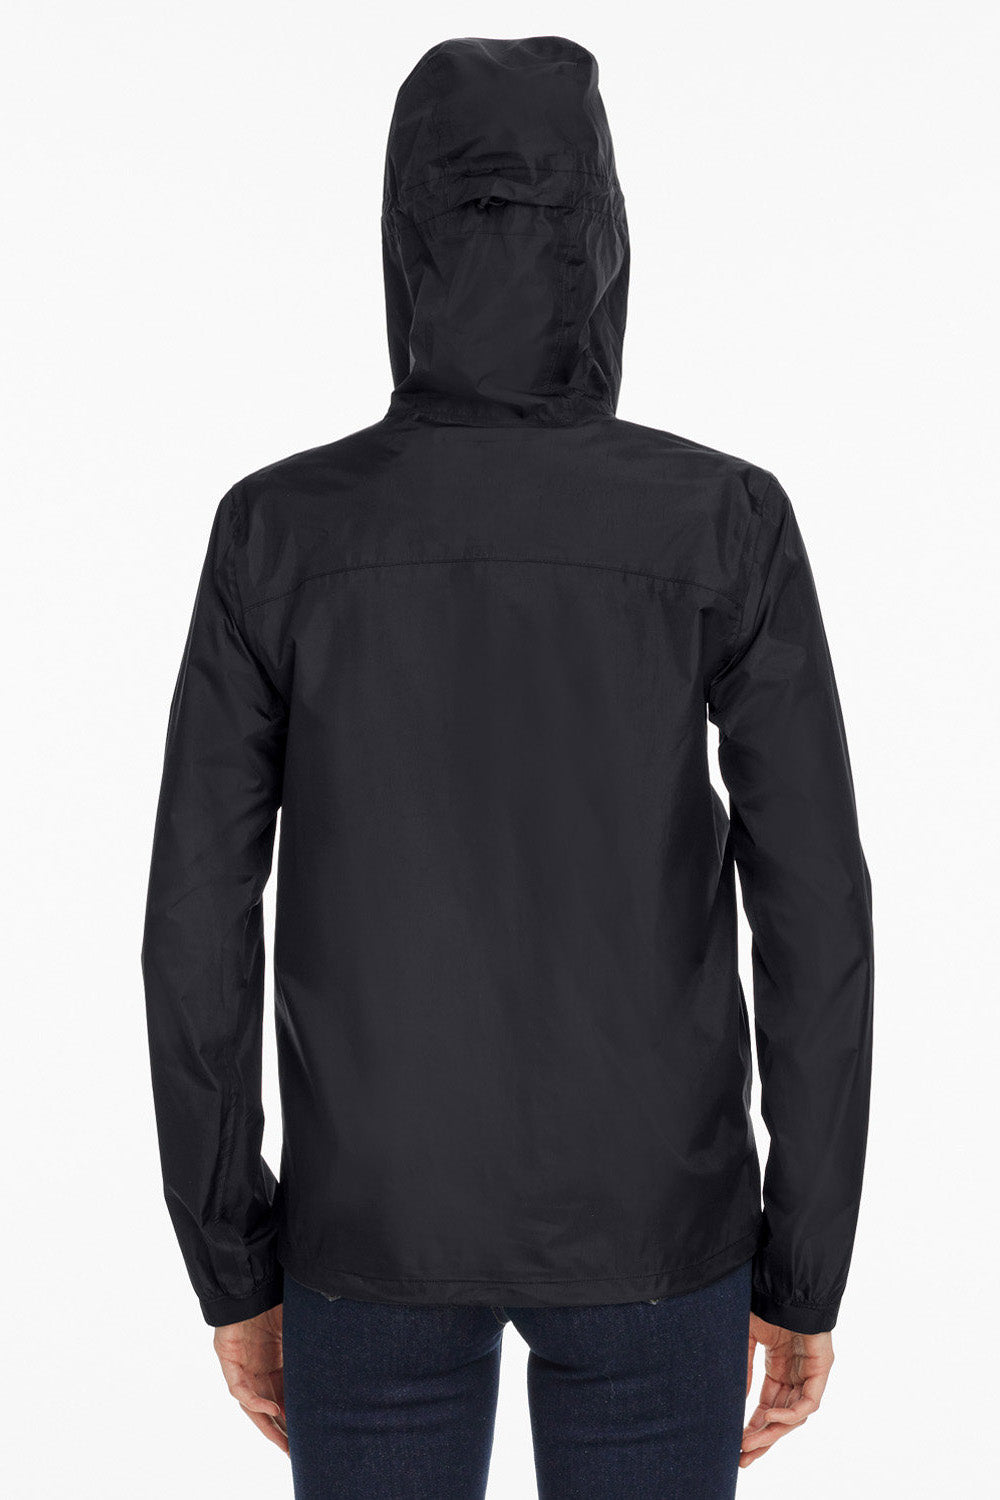 Under Armour 1374645 Womens Cloudstrike 2.0 Waterproof Full Zip Hooded Jacket Black Model Back